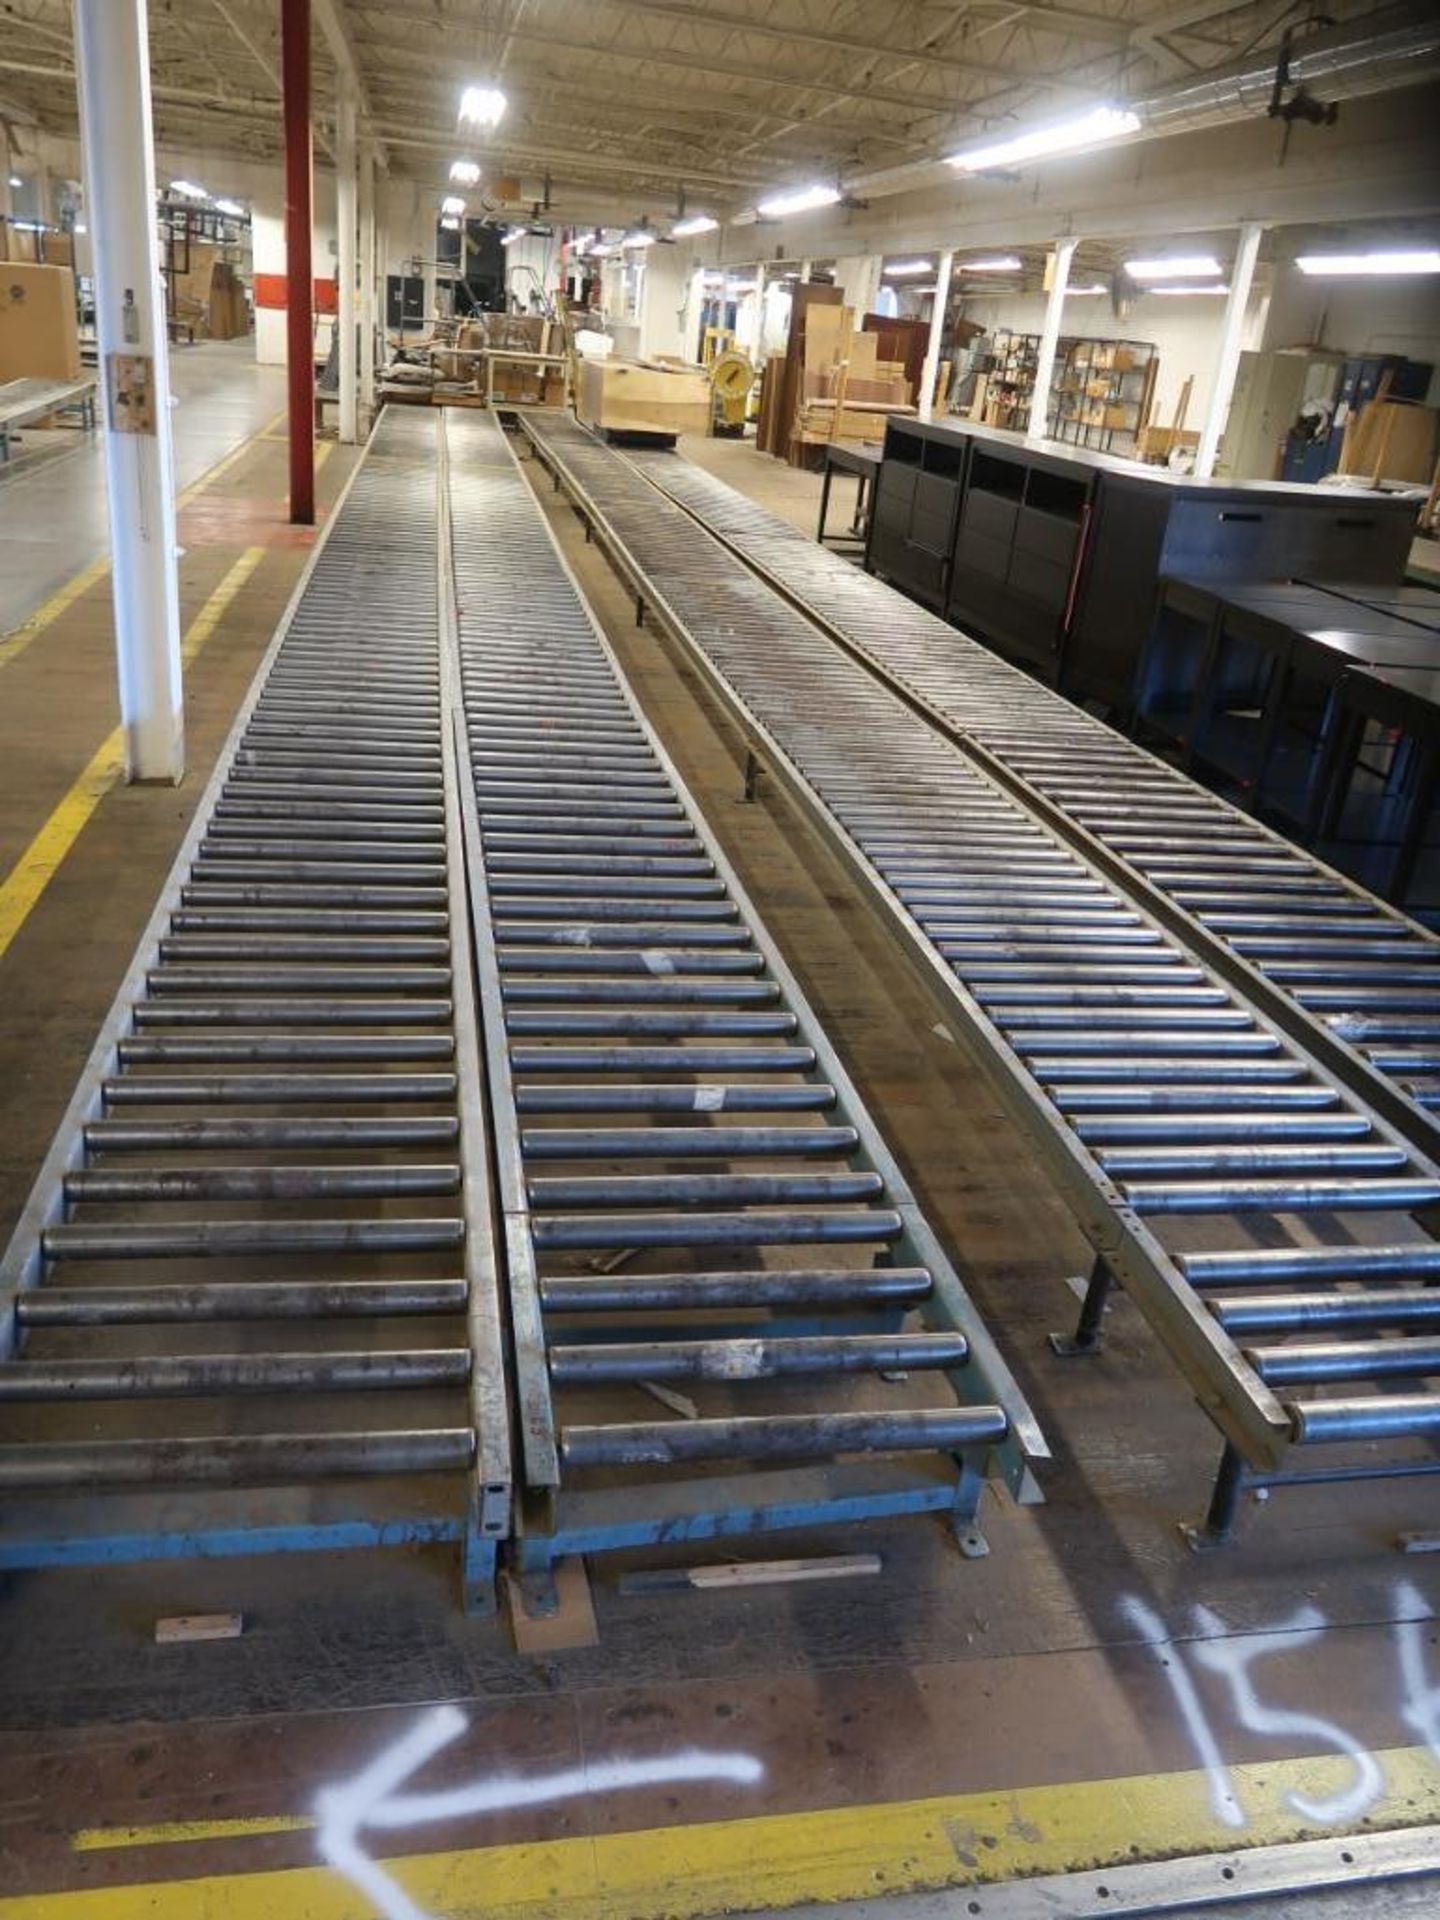 LOT: 30 in. x 80 ft. (est.) Power Roller Conveyor, 22 in. x 640 ft. (est.) Power Roller Conveyor, 36